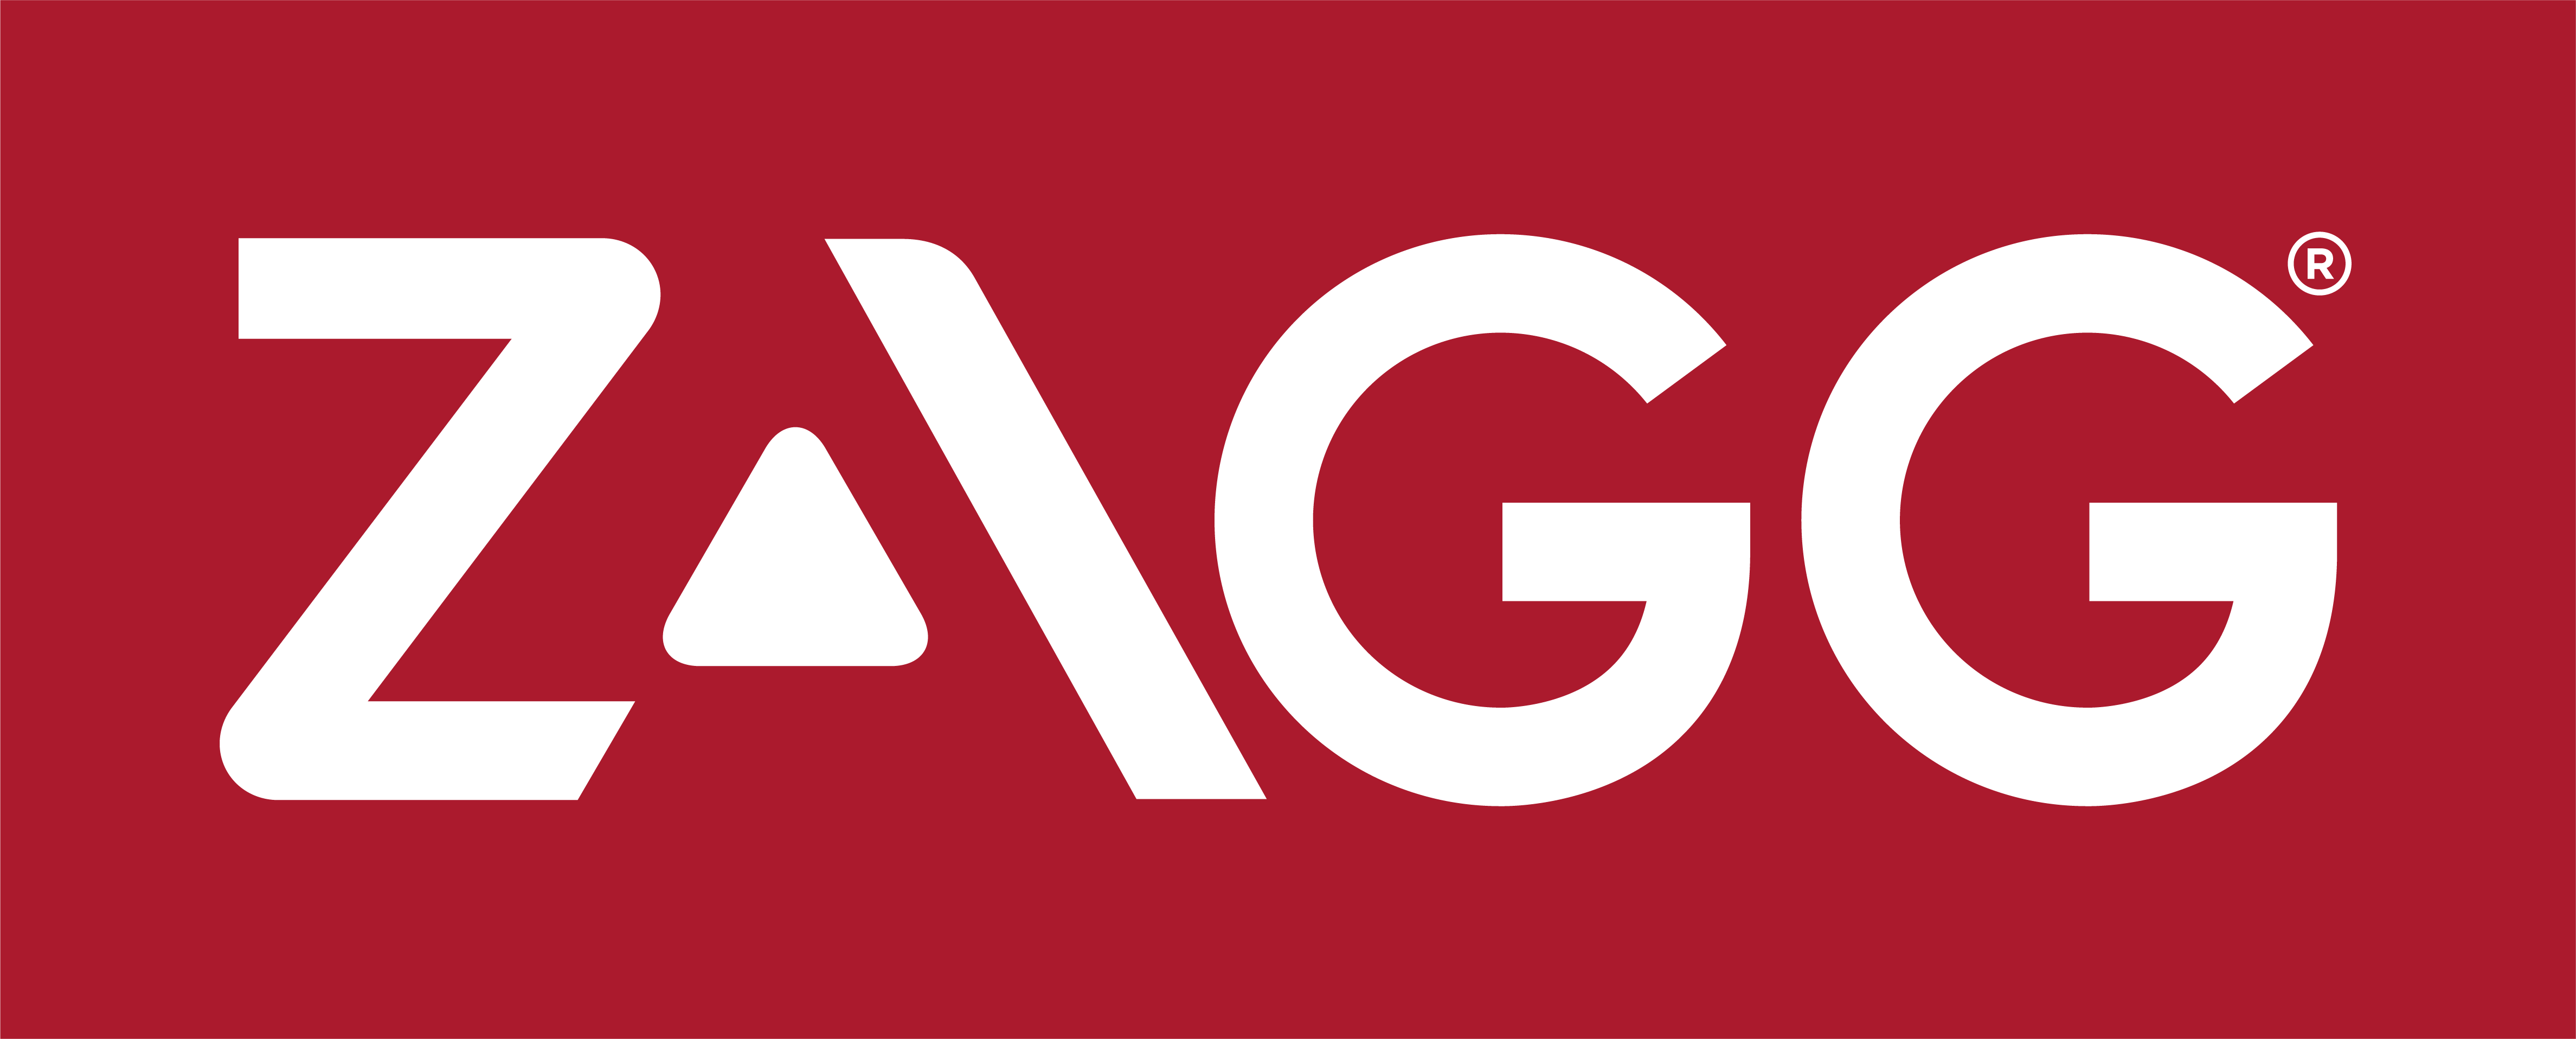 ZAGG Inc Reports Fin